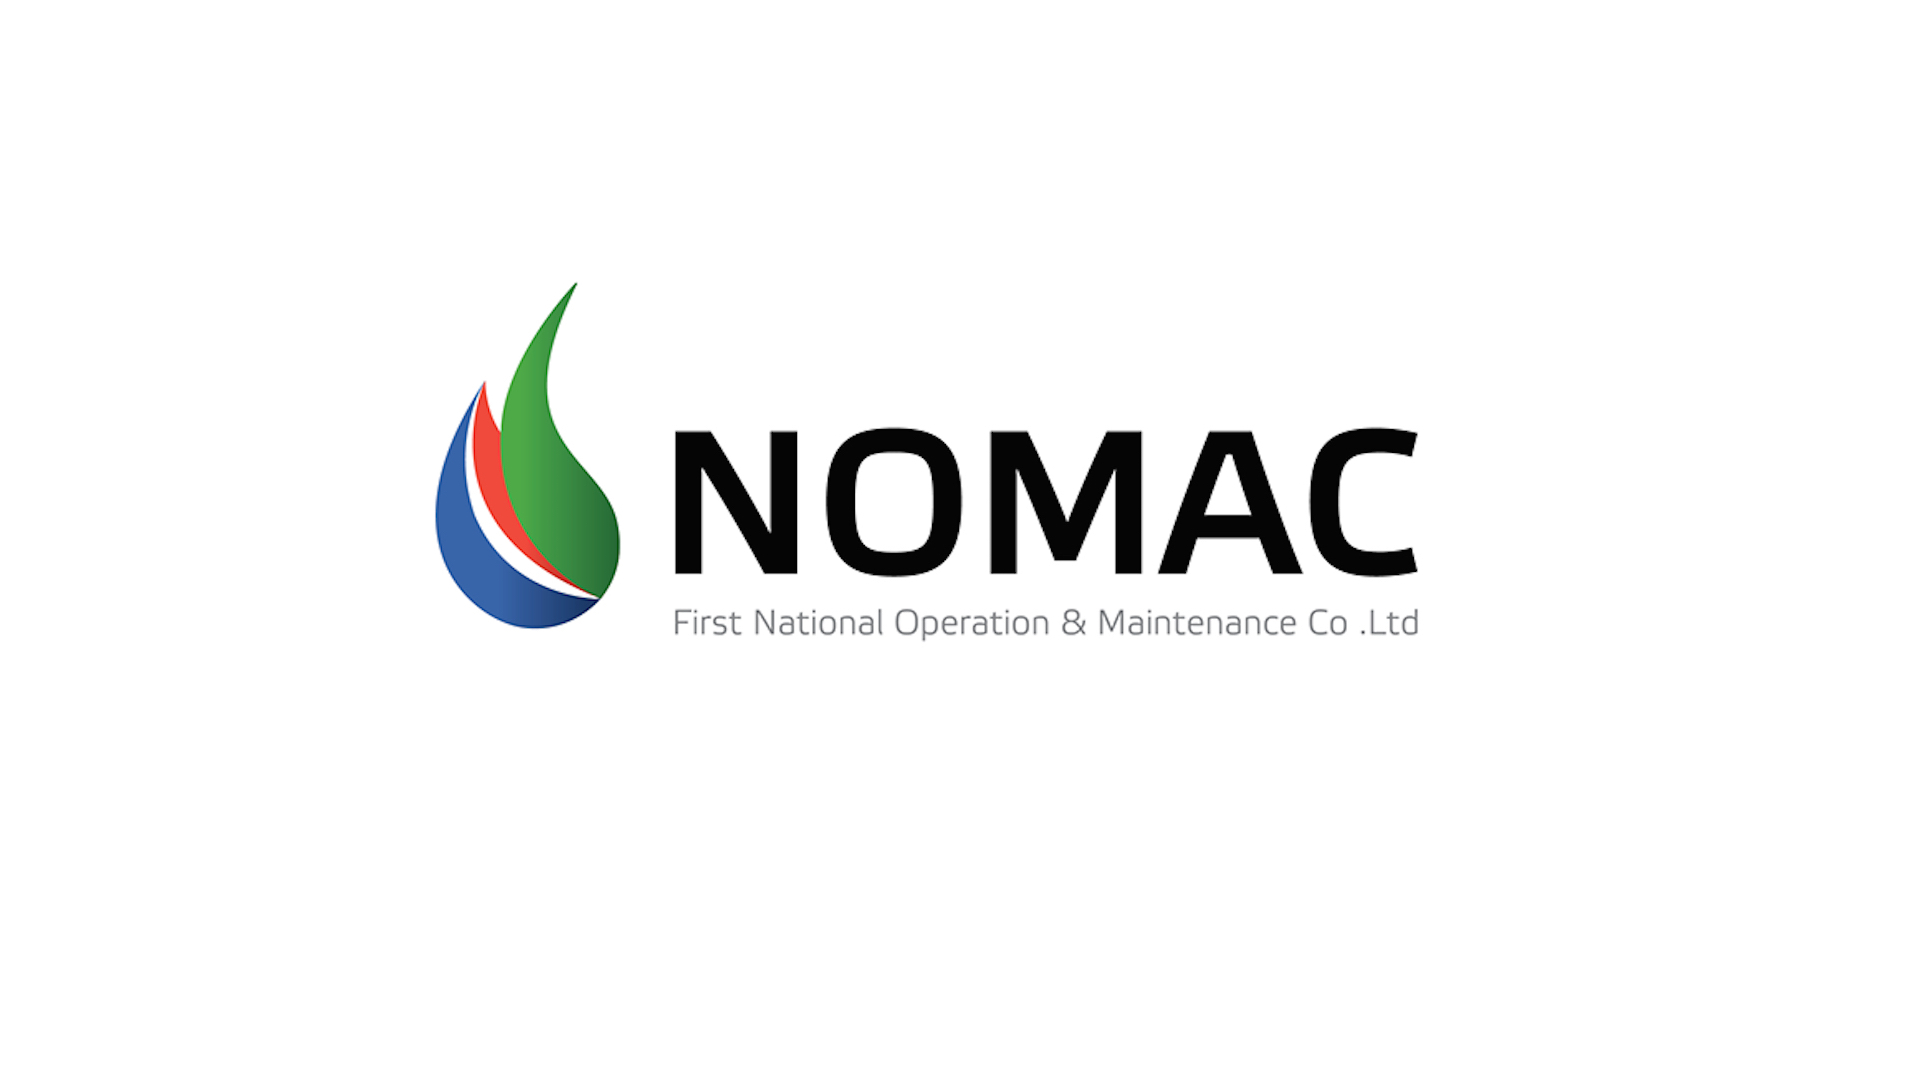 شركة نوماك “NOMAC” تعلن عن توفر عدد من الوظائف الشاغرة